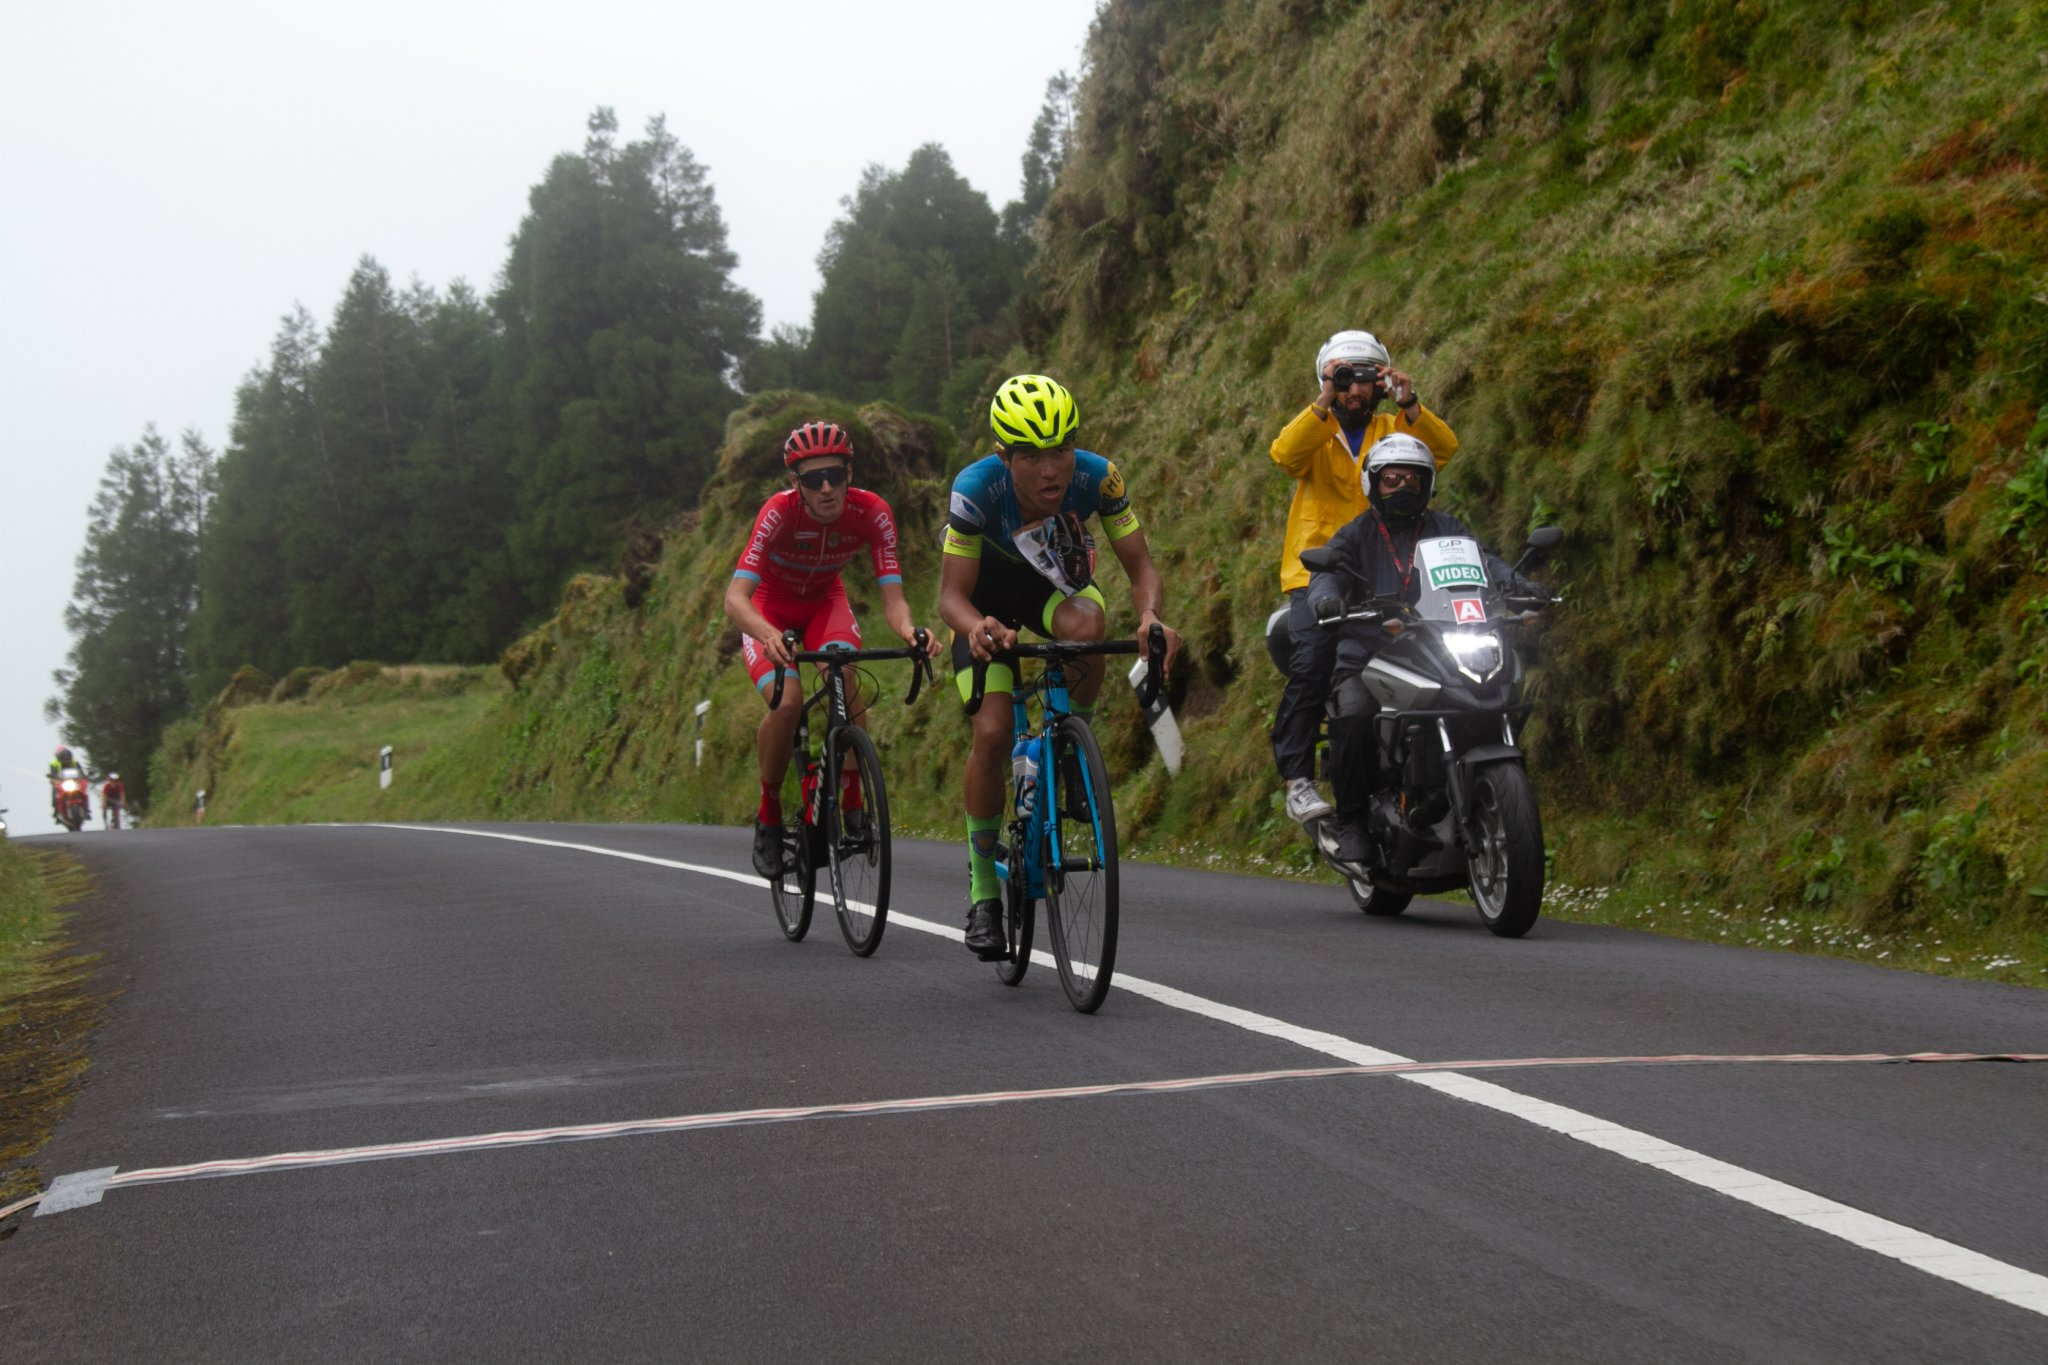 Imagen de David Mendoza en el GP Azores (Foto: UVP - Federaçao Portuguesa de Ciclismo)